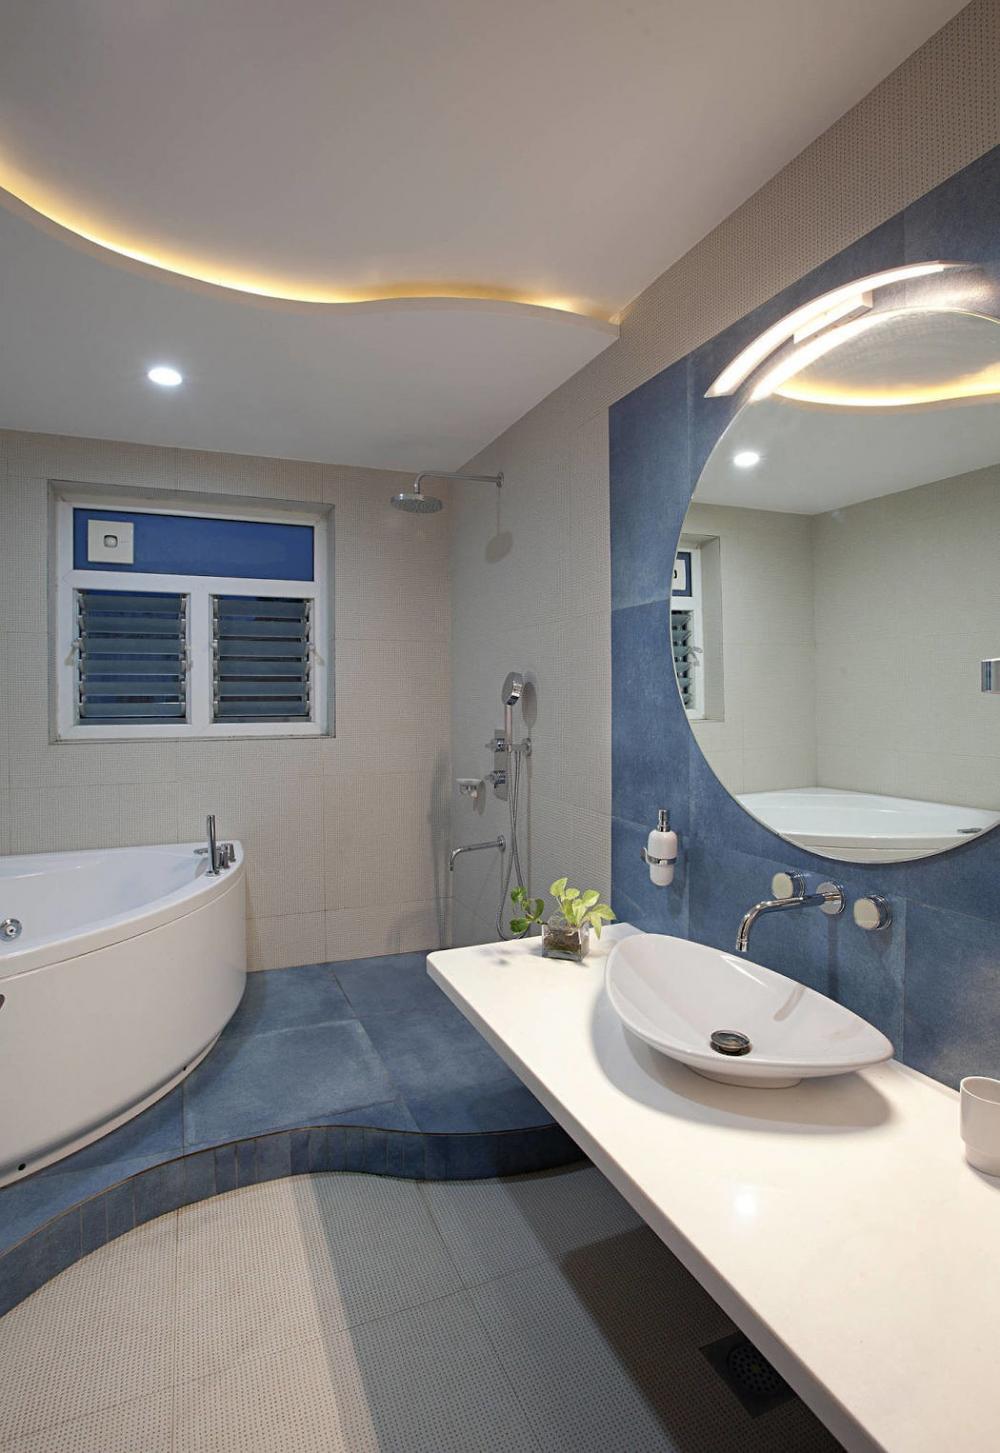 Những khoảng sơn xanh trong phòng tắm tạo cảm giác tươi mát cho người sử dụng